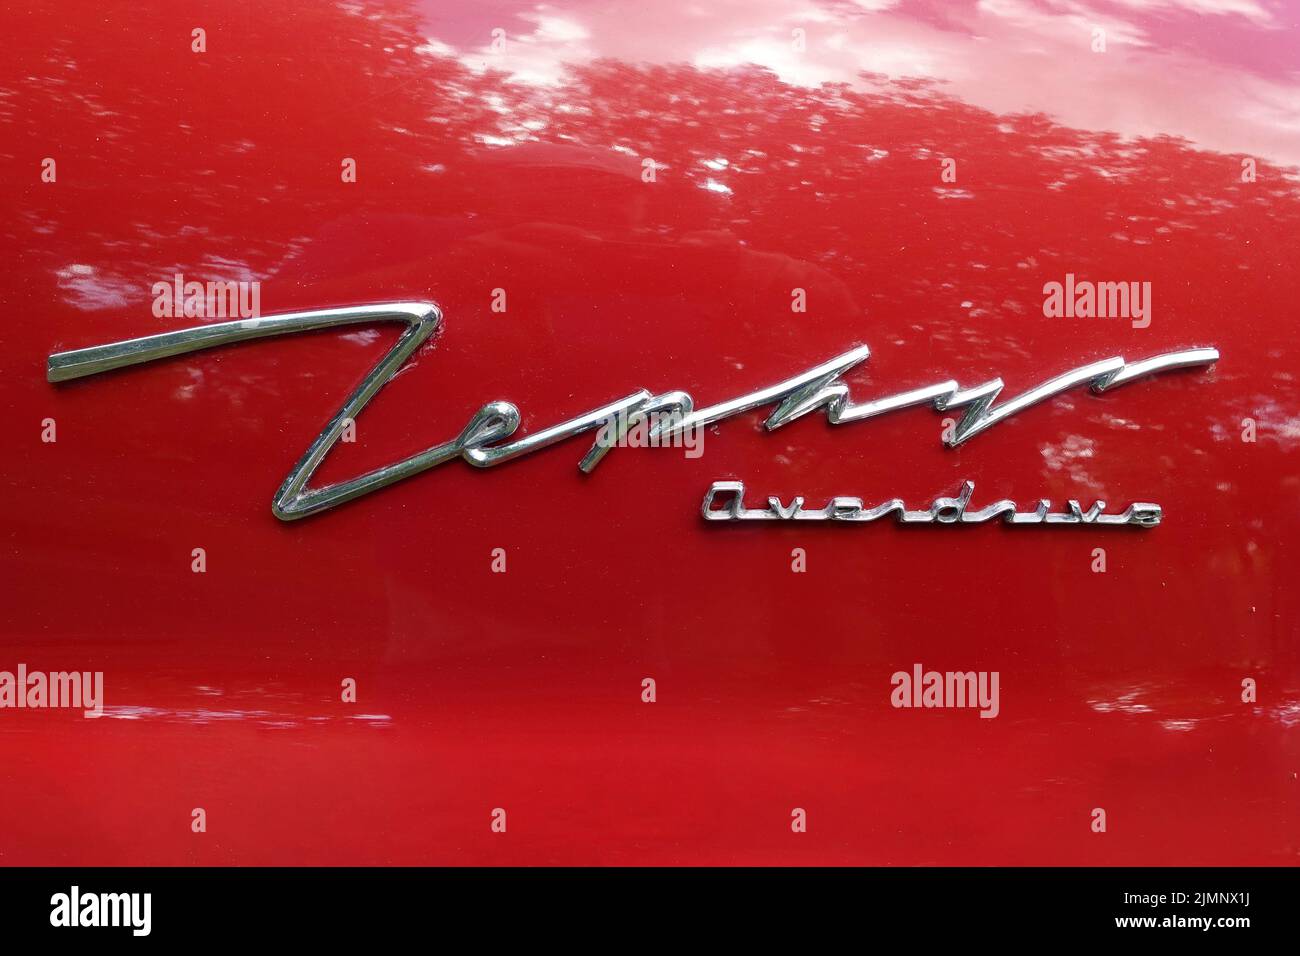 Ford Zephyr, insignia, logotipo, sobremarcha, coche clásico Foto de stock